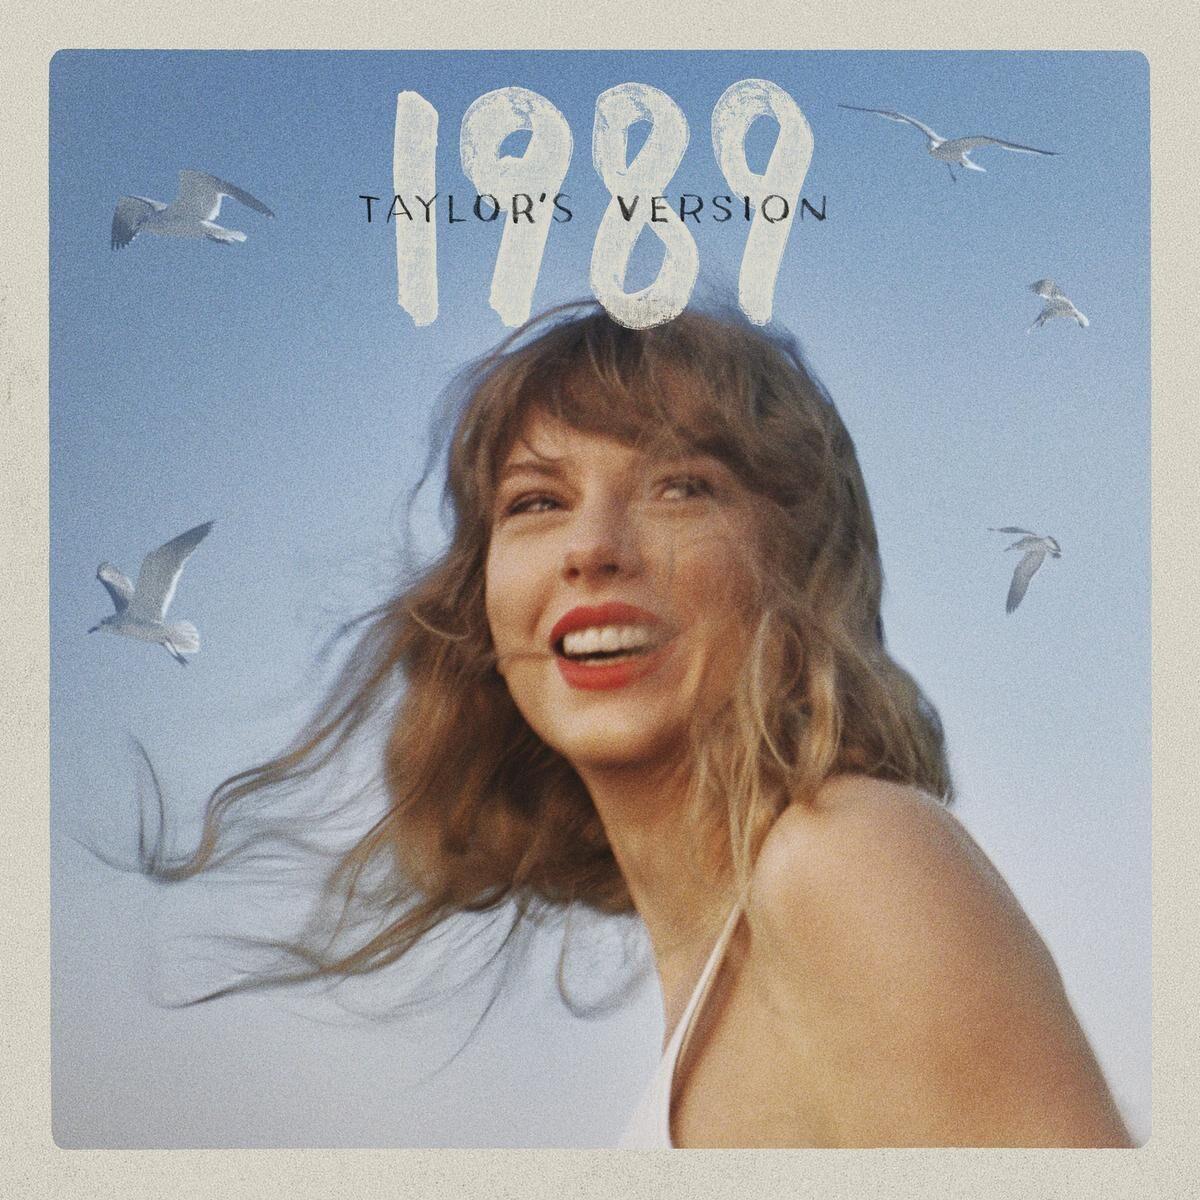 Mini Vinyl Fearless taylor's Version Taylor Swift -  Hong Kong